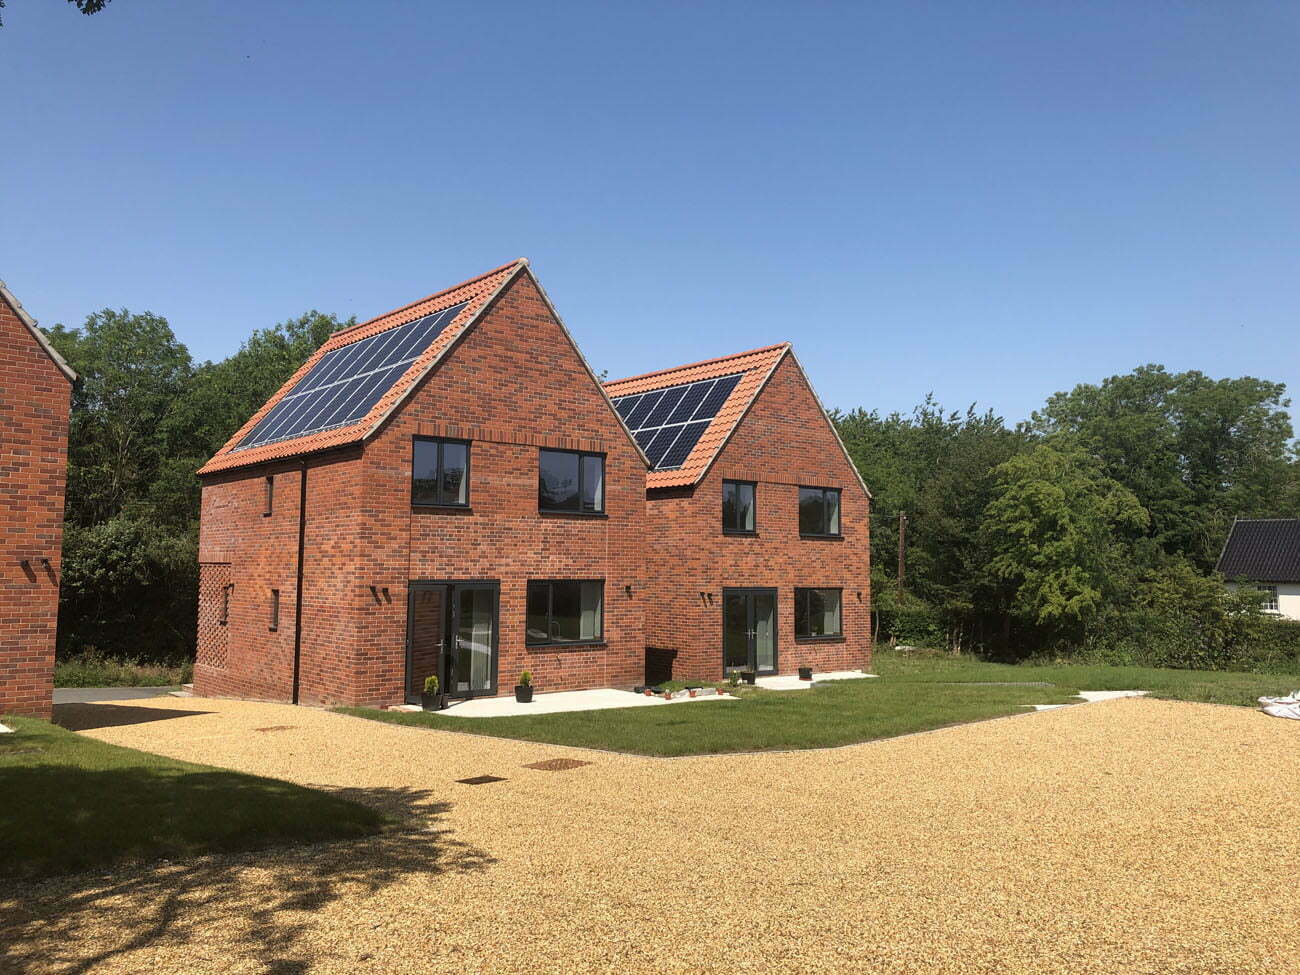 New eco dwellings, Wetheringsett, Suffolk